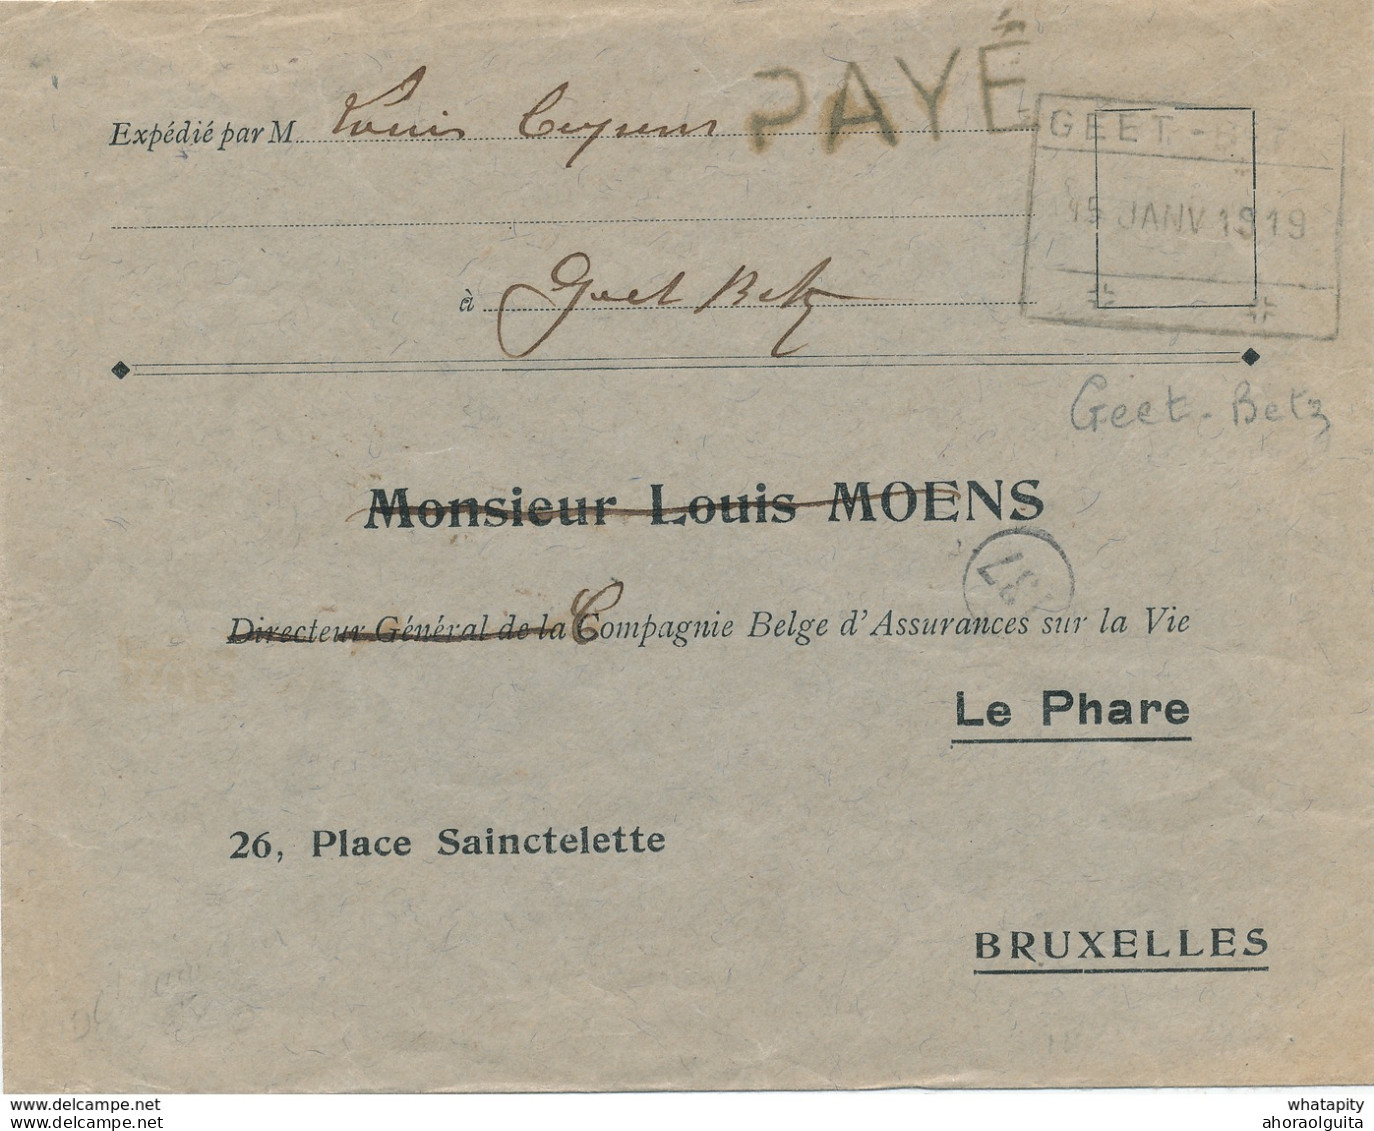 560/27 -  Enveloppe Port PAYE - Cachet De FORTUNE Rectangle Chemin De Fer GEET BETZ 1919 - Fortune Cancels (1919)